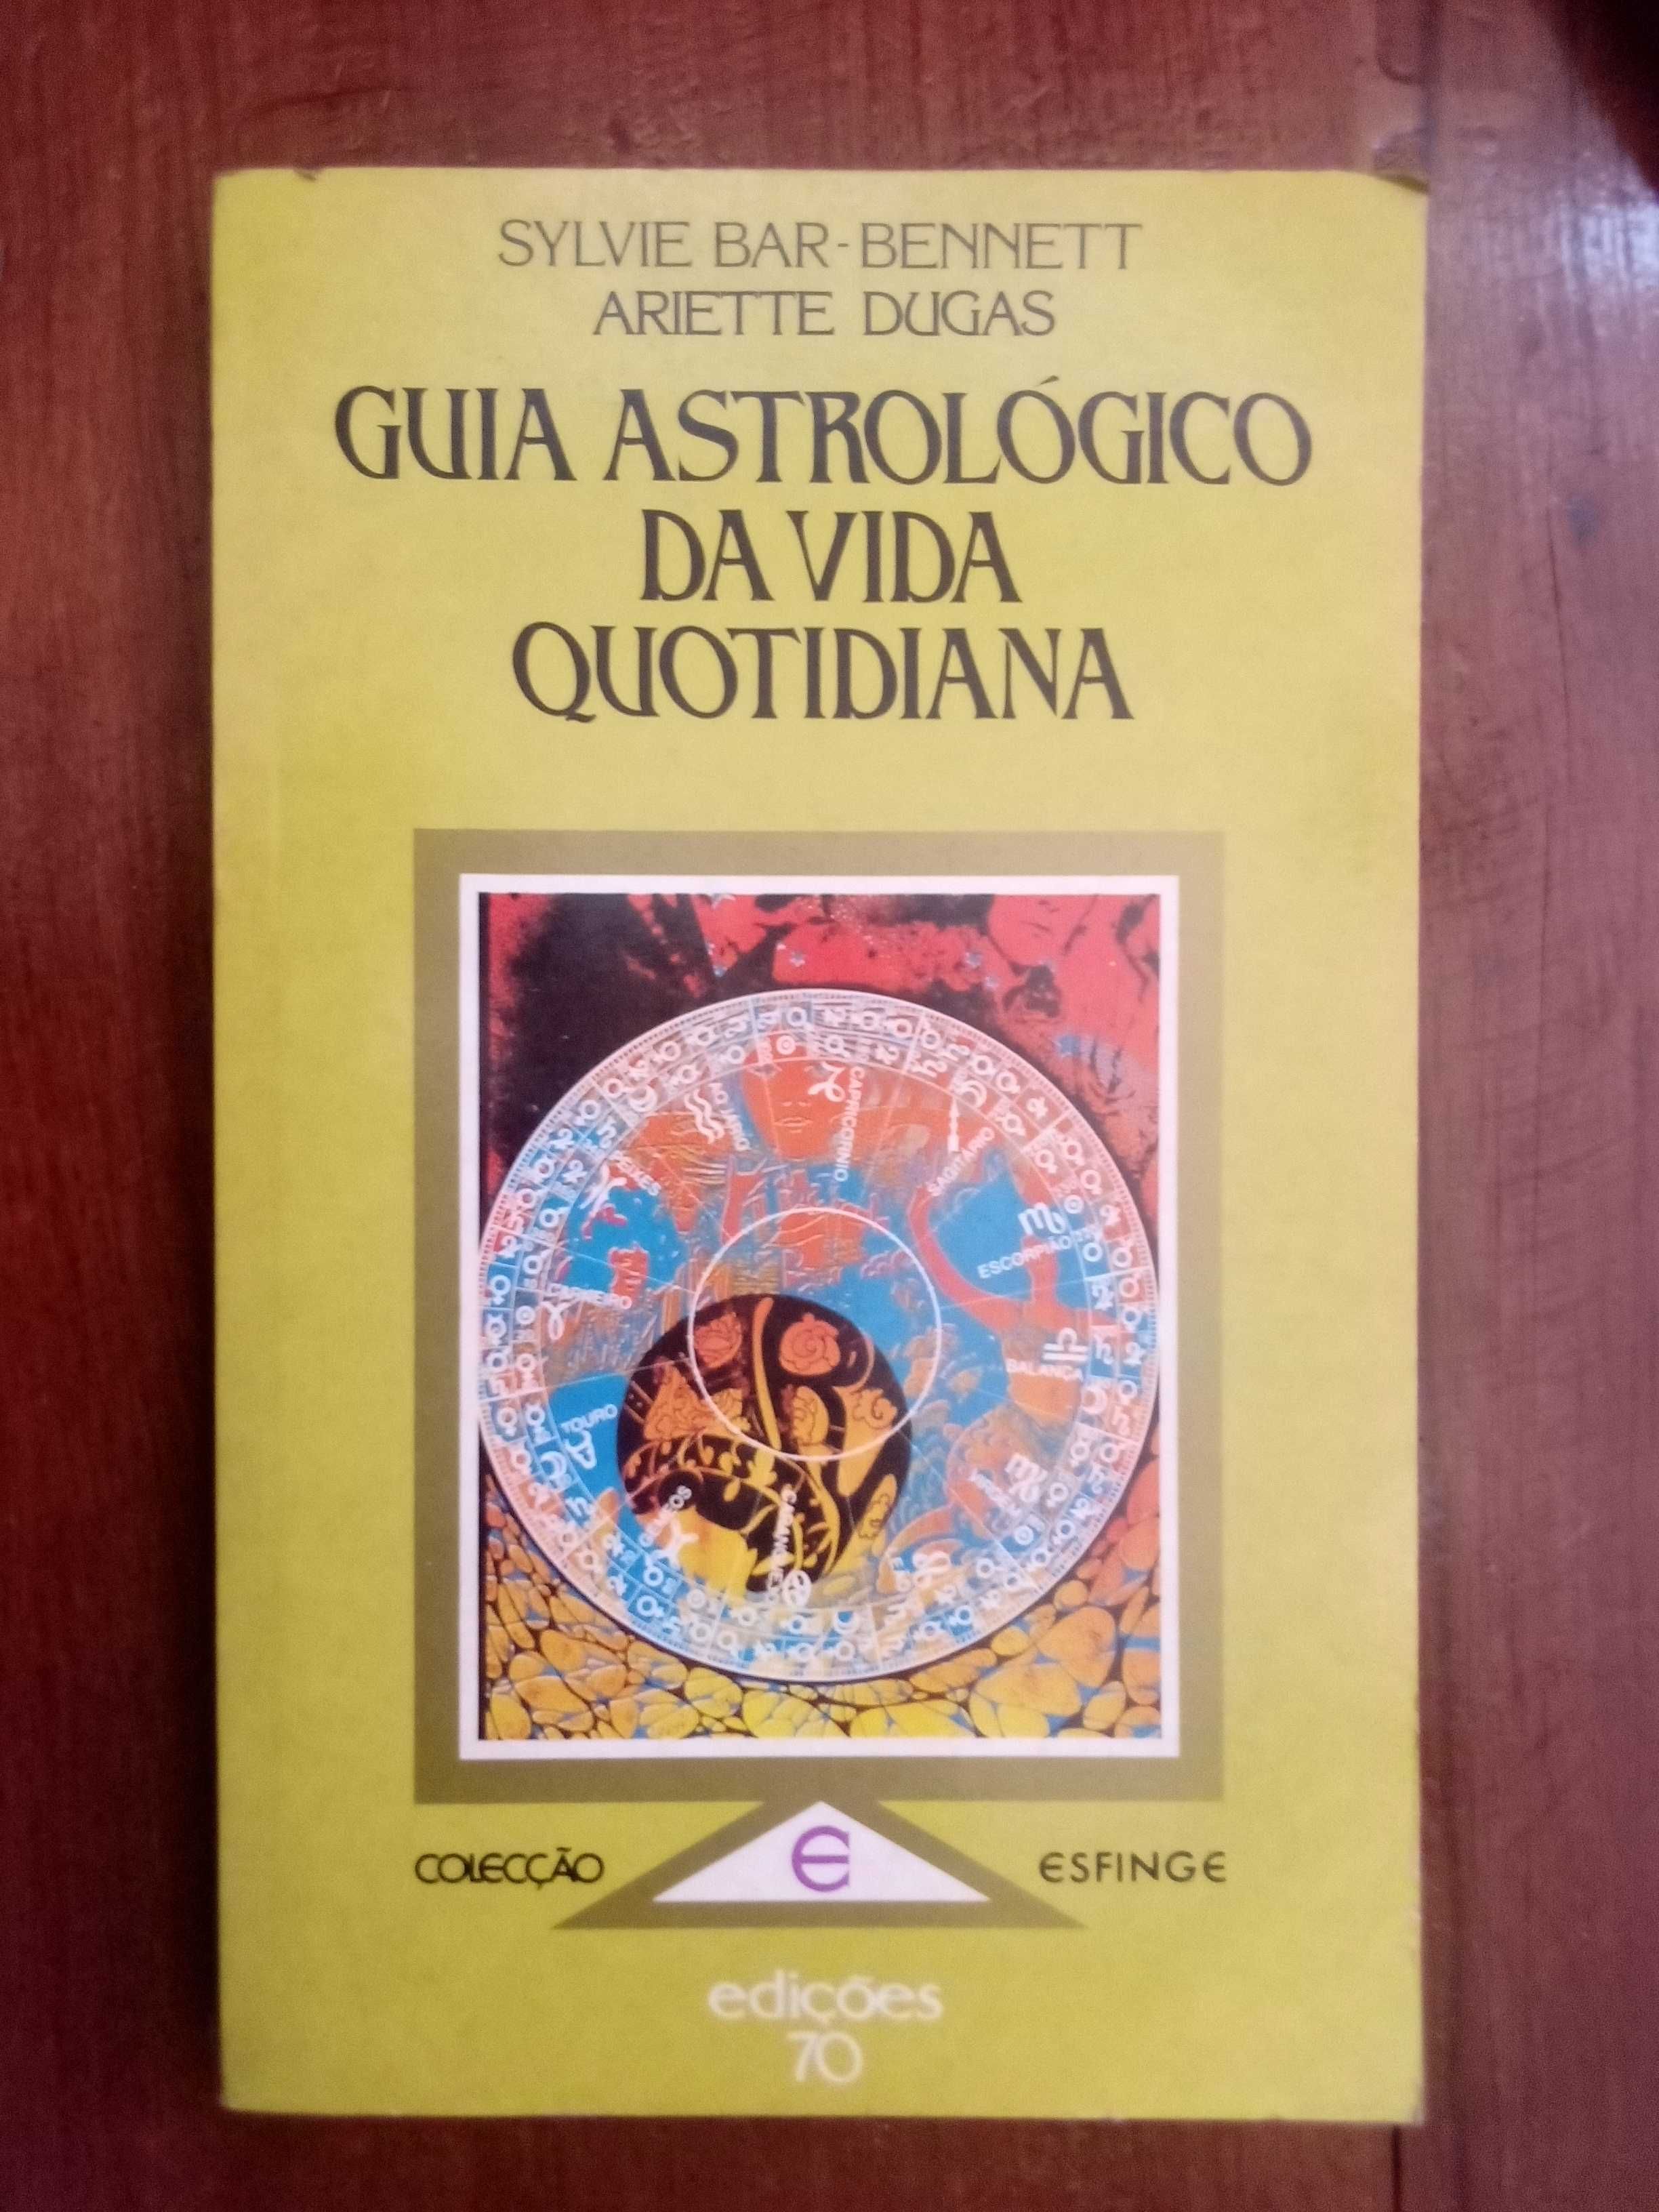 Sylvie Bar-Bennett e A. Dugas - Guia astrológico da vida quotidiana